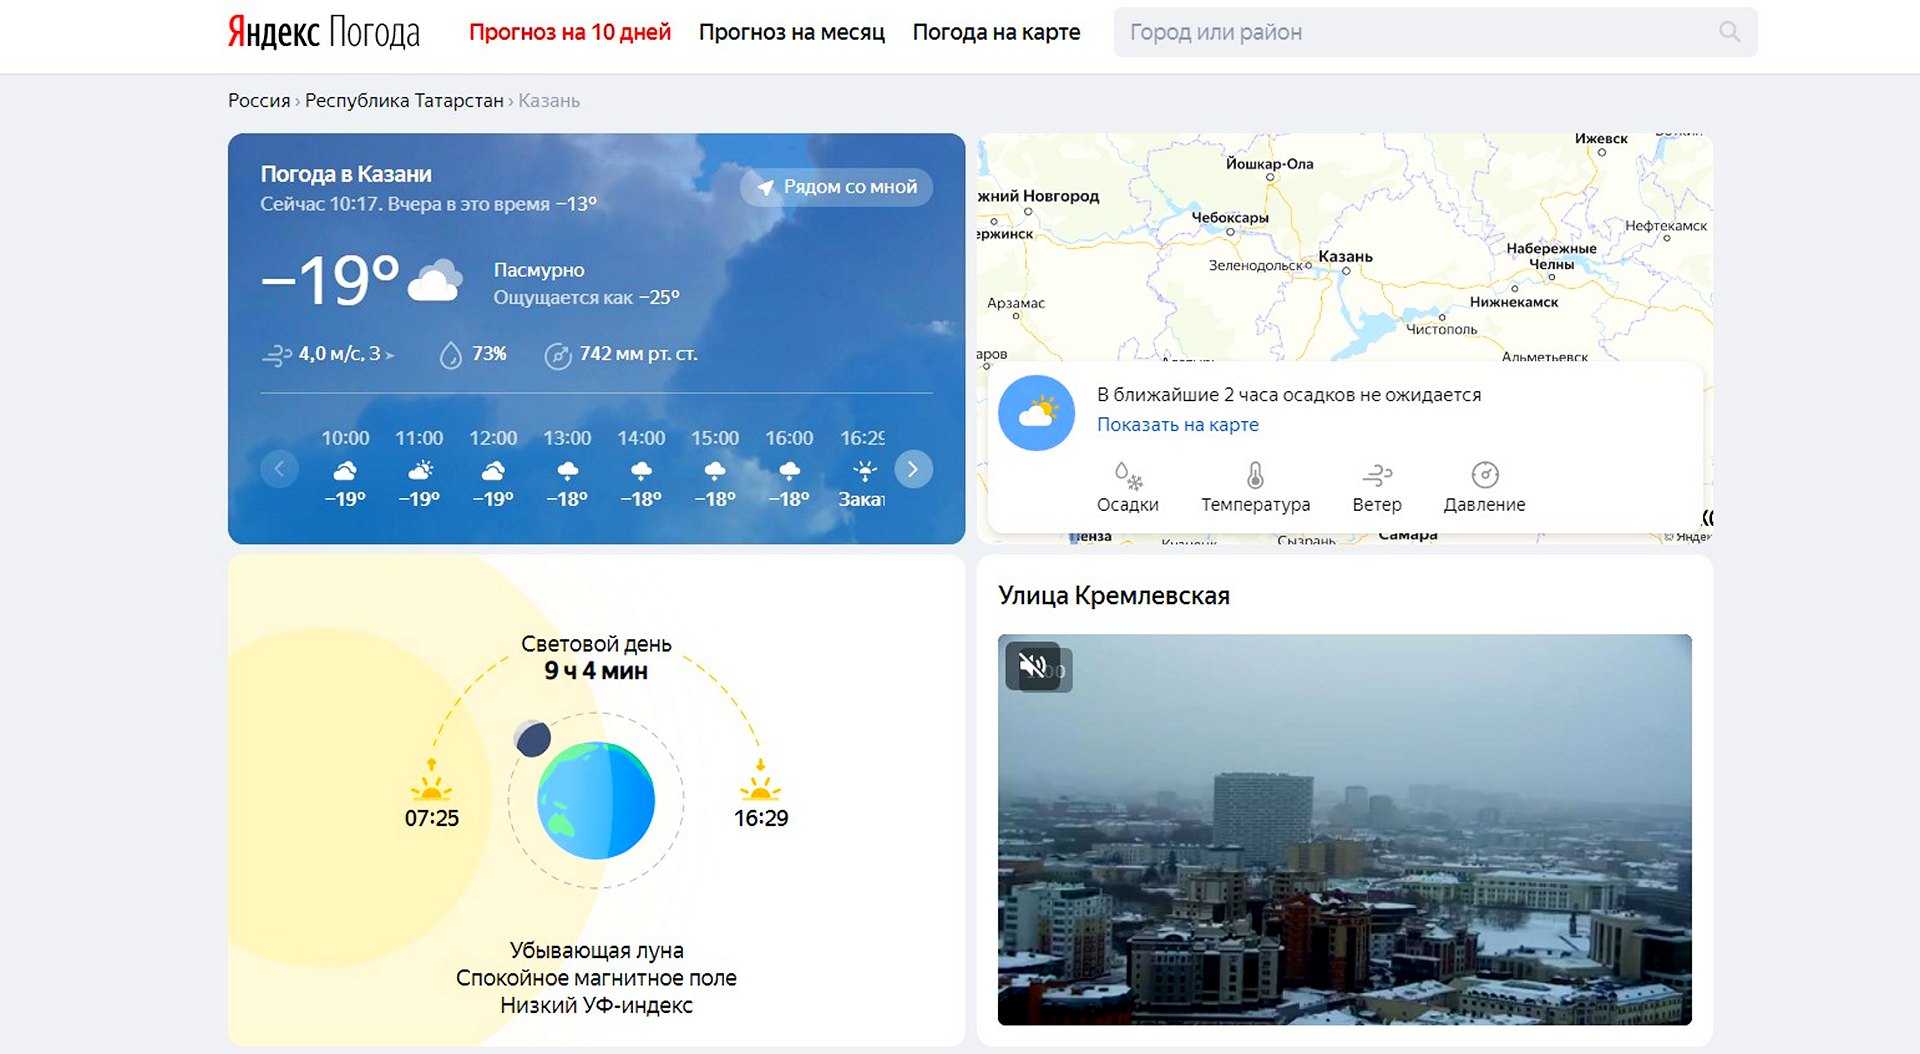 Какой сайт точный прогноз погоды. Яндекс погода. Прогноз погоды Яндекс. Яндекс погода карта. Яндекс.погода прогноз погоды.